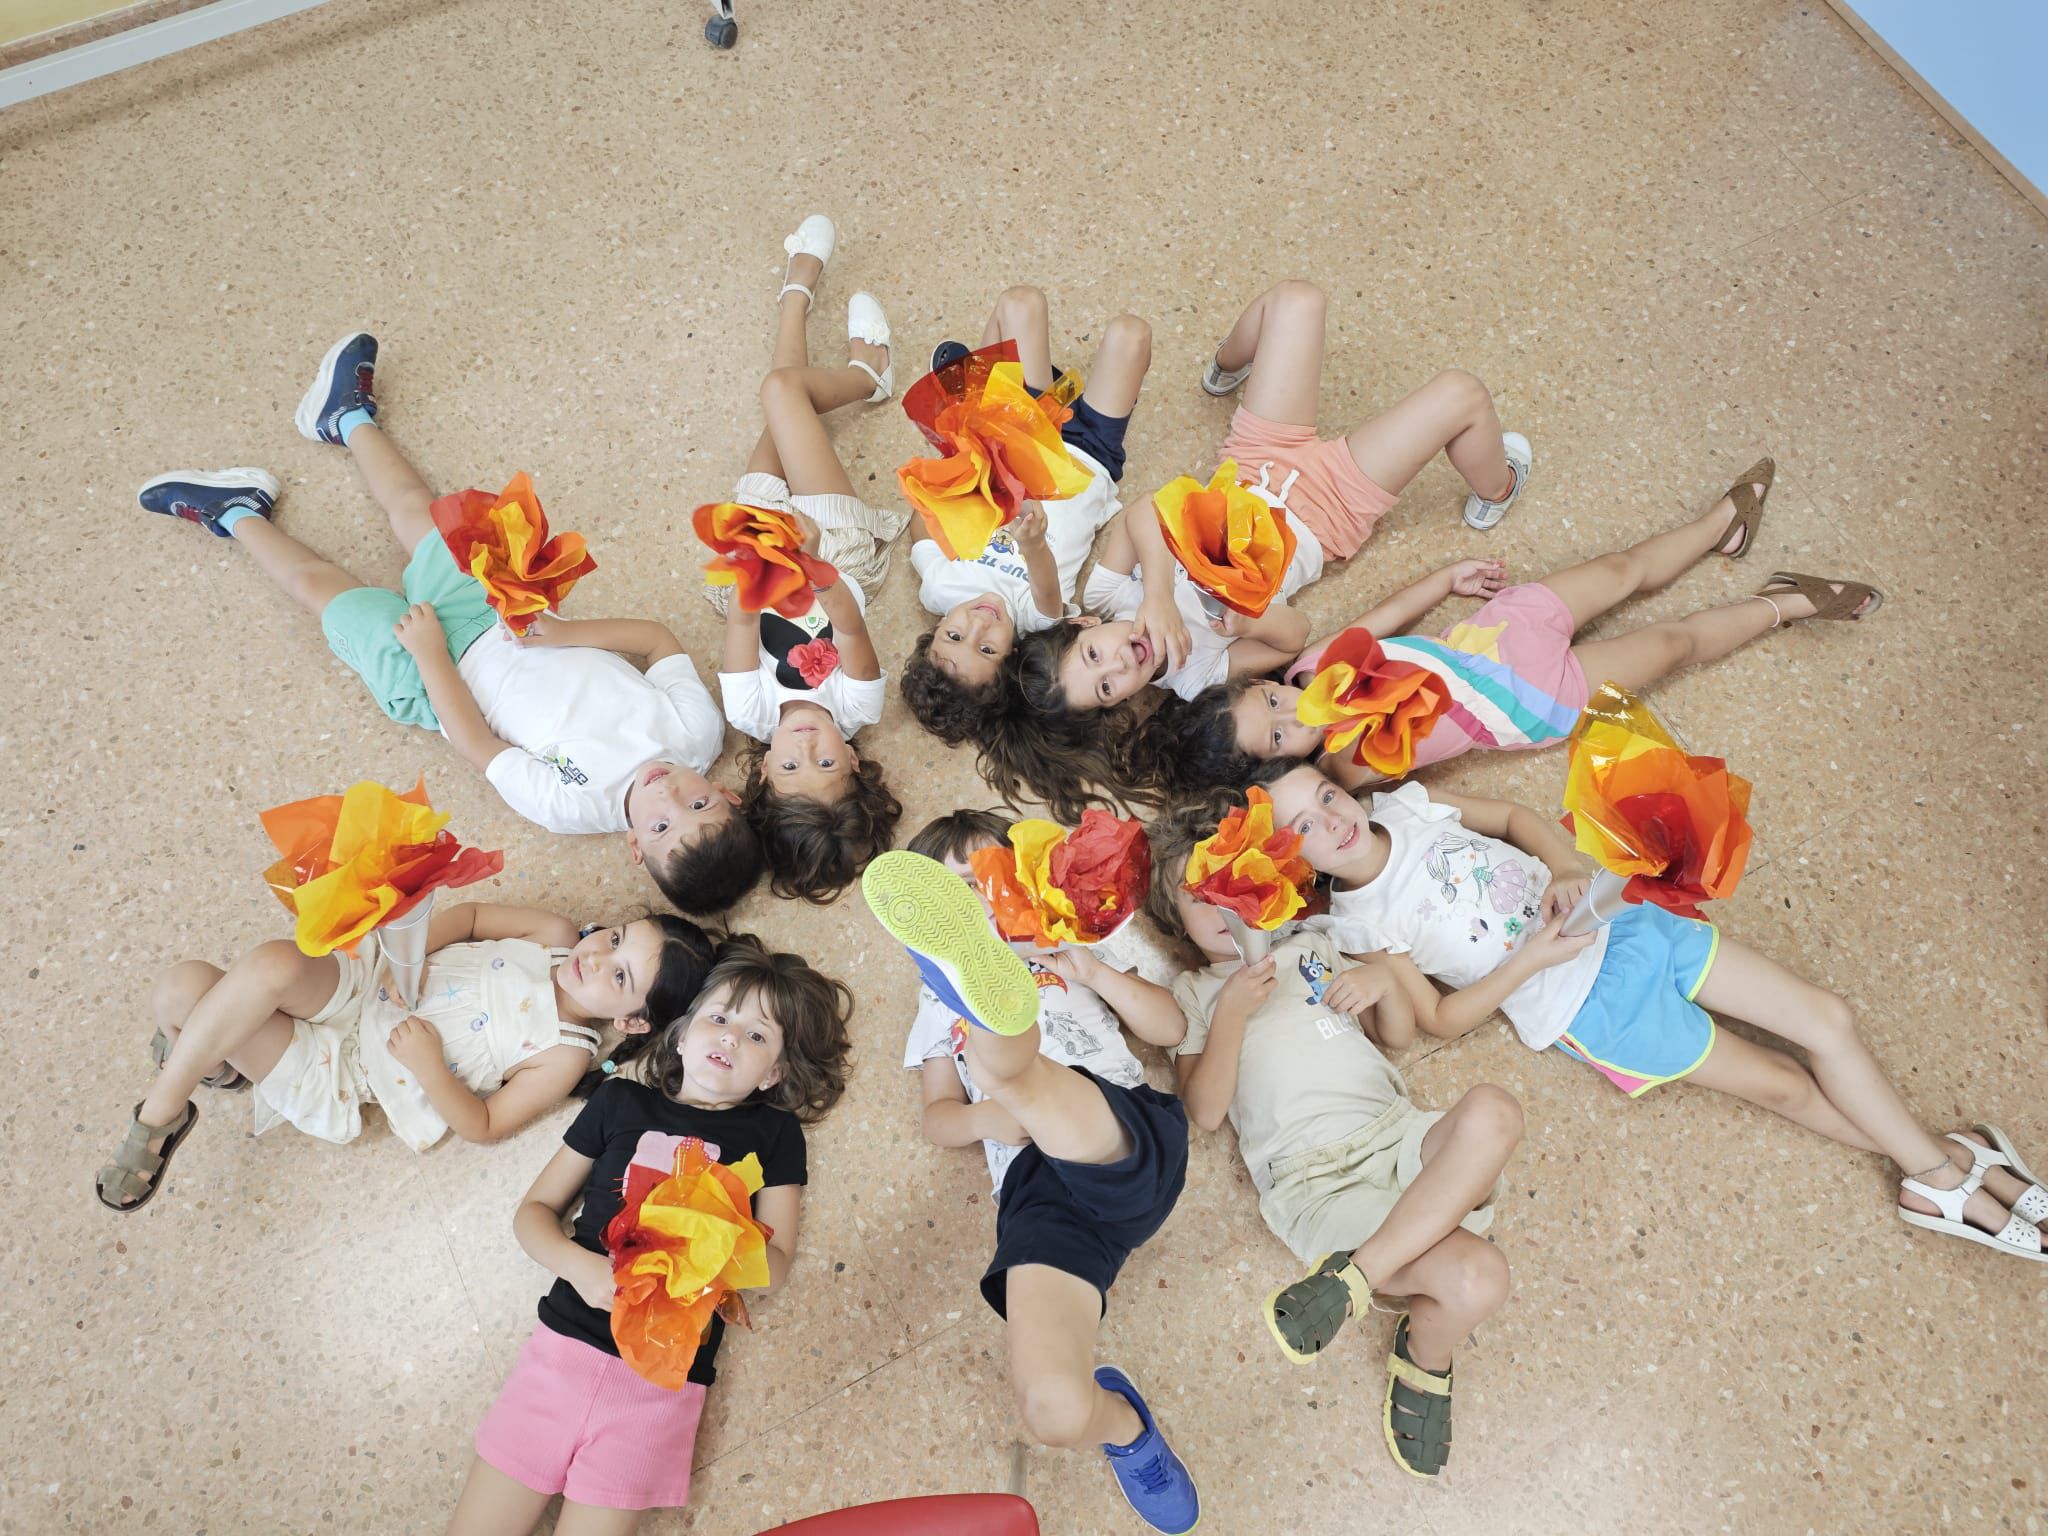 Més de 90 alumnes disfruten del “Verano con Arte” del Centre Municipal de les Arts de Burriana